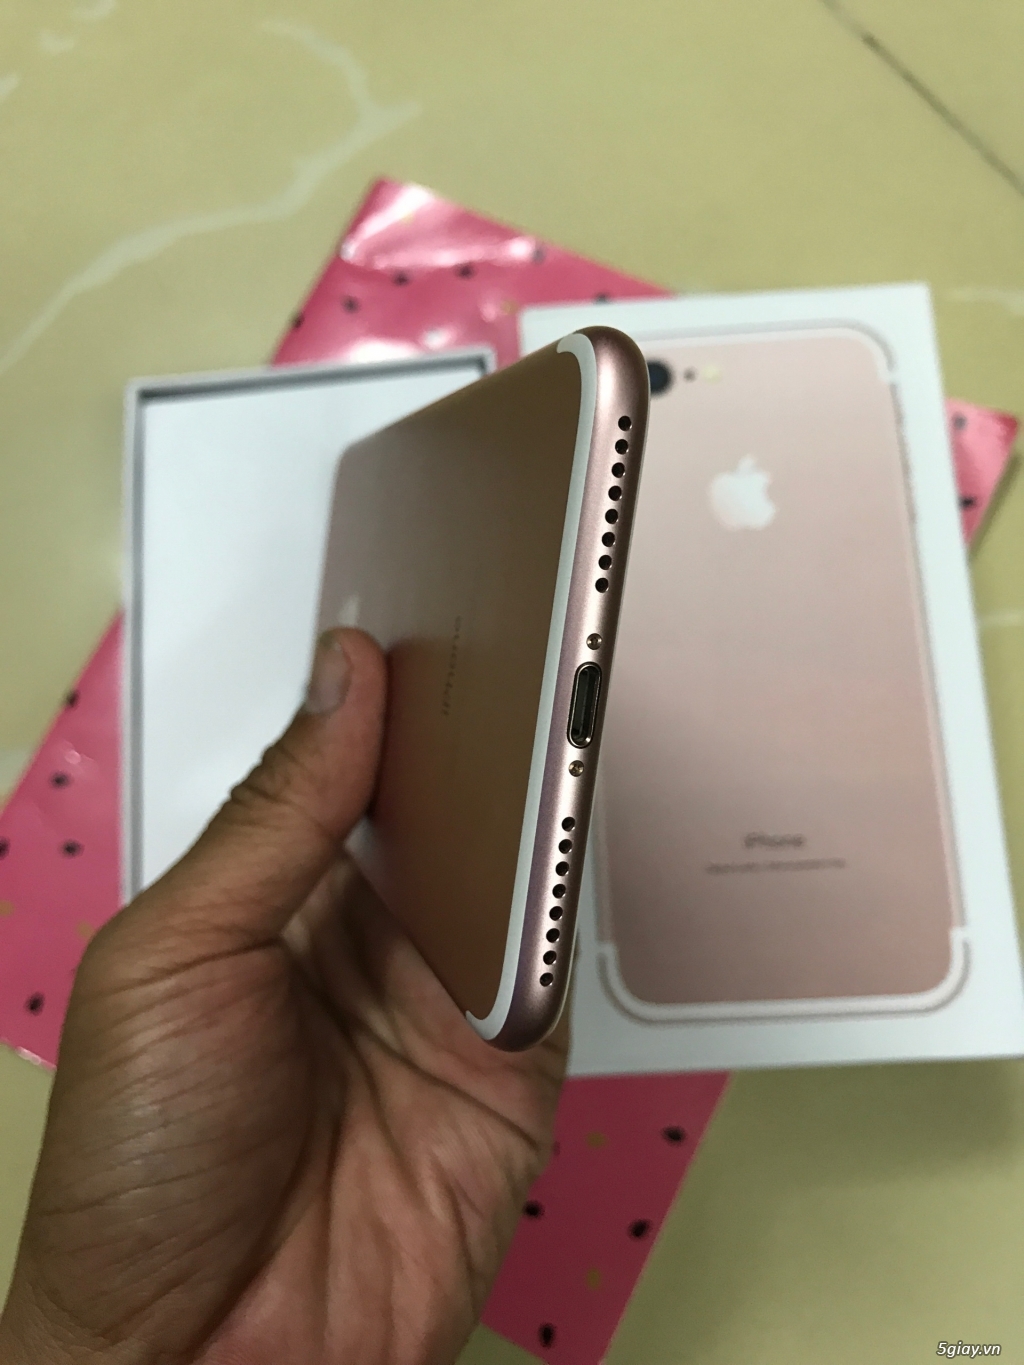 Bán iphone 7 plus vàng hồng 32gb 99.9% đẹp như mới nguyên zin - 3